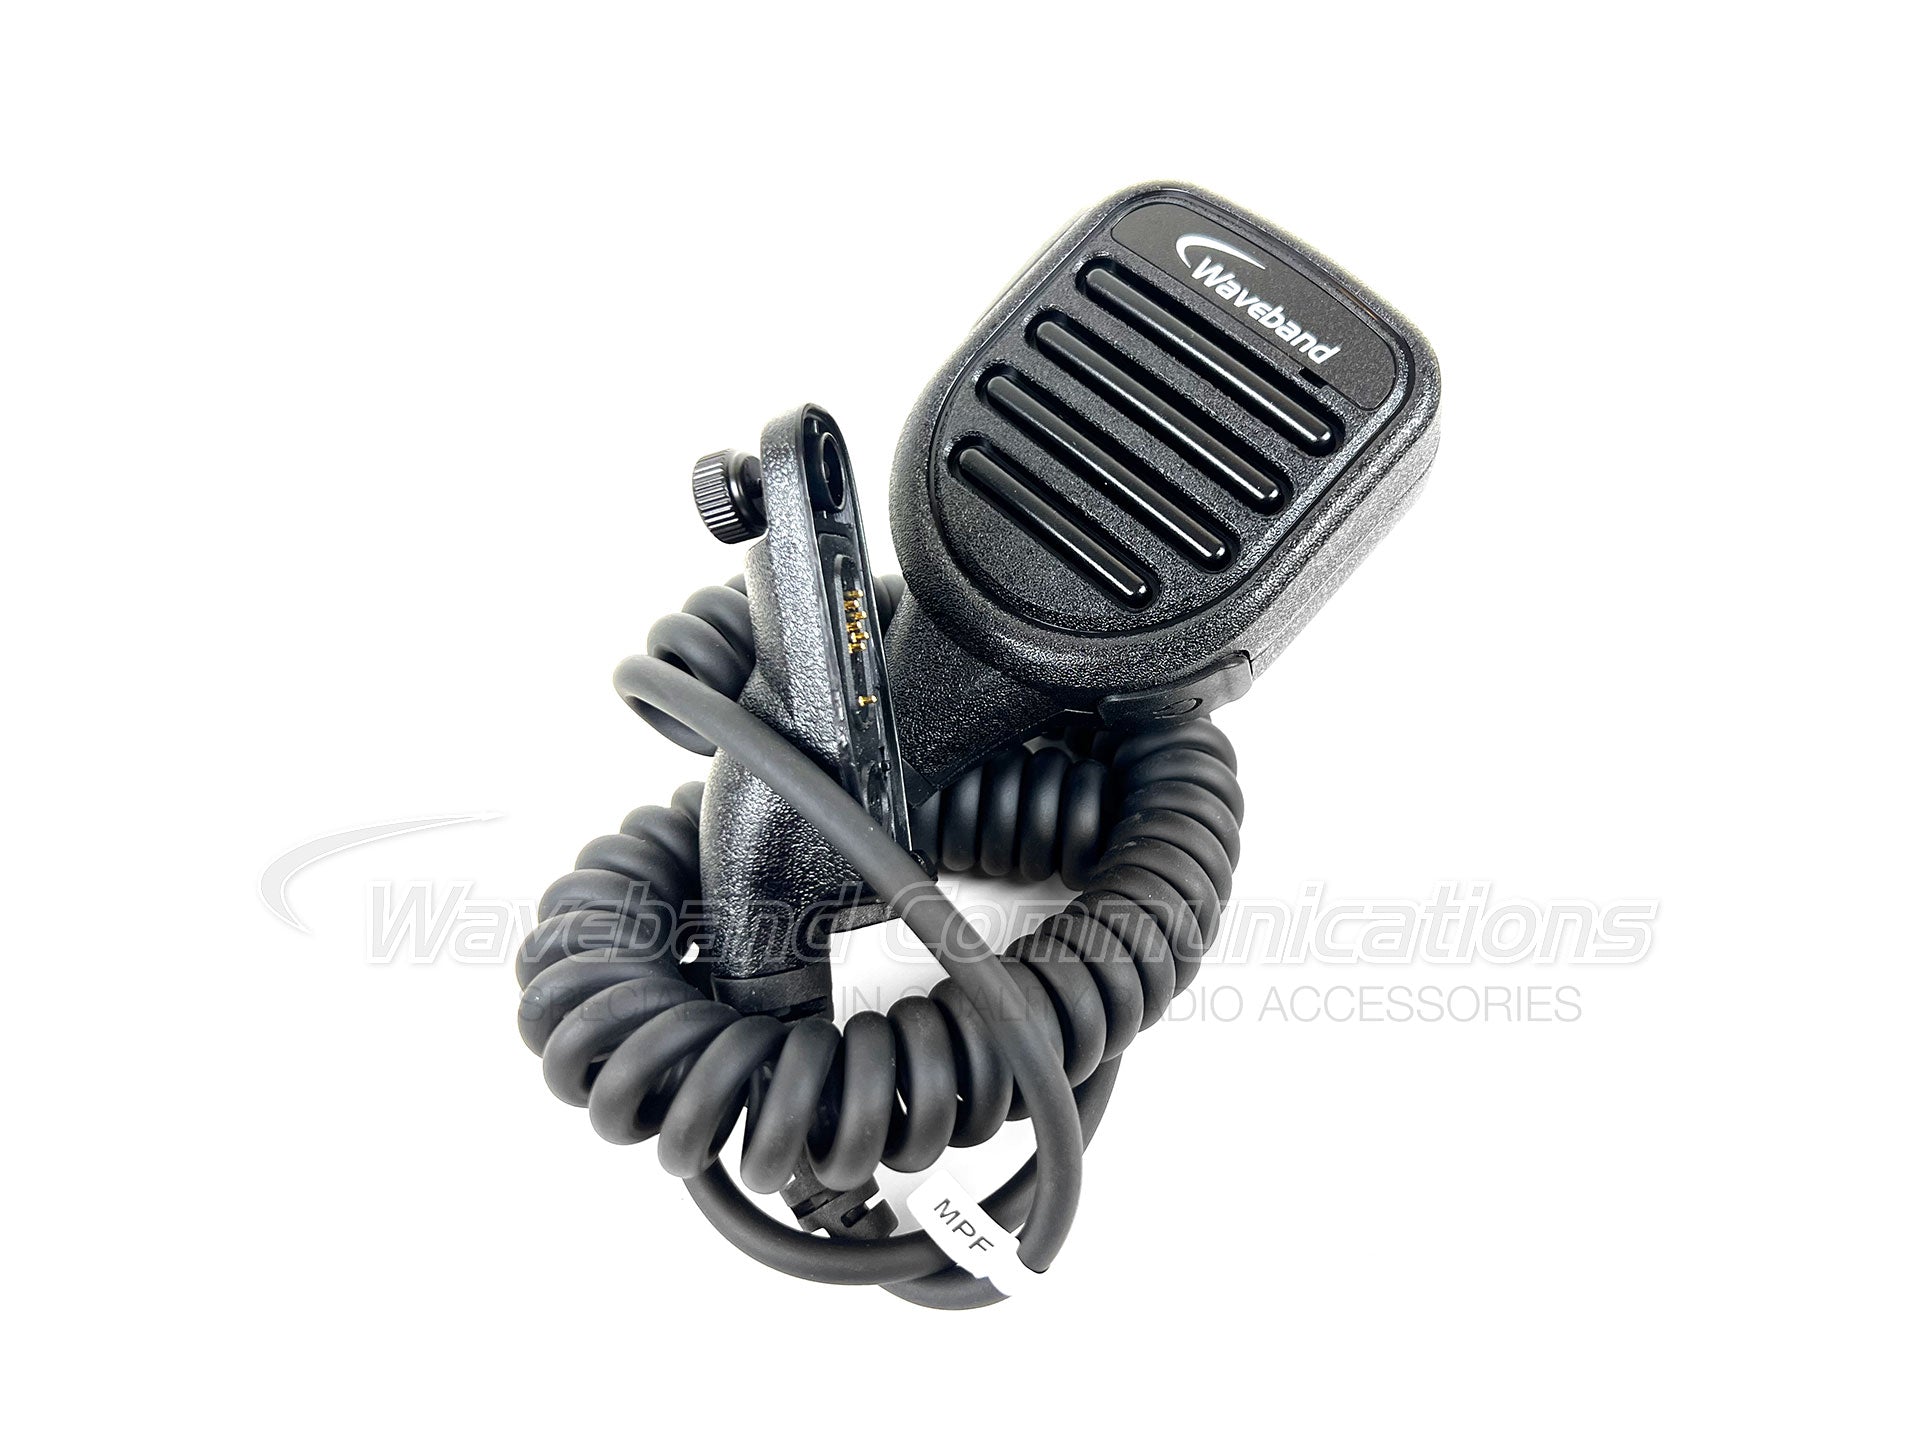 PMMN4025 Microphone haut-parleur déporté pour radios Motorola XPR TRBO. WB # WX-8010-M-P08